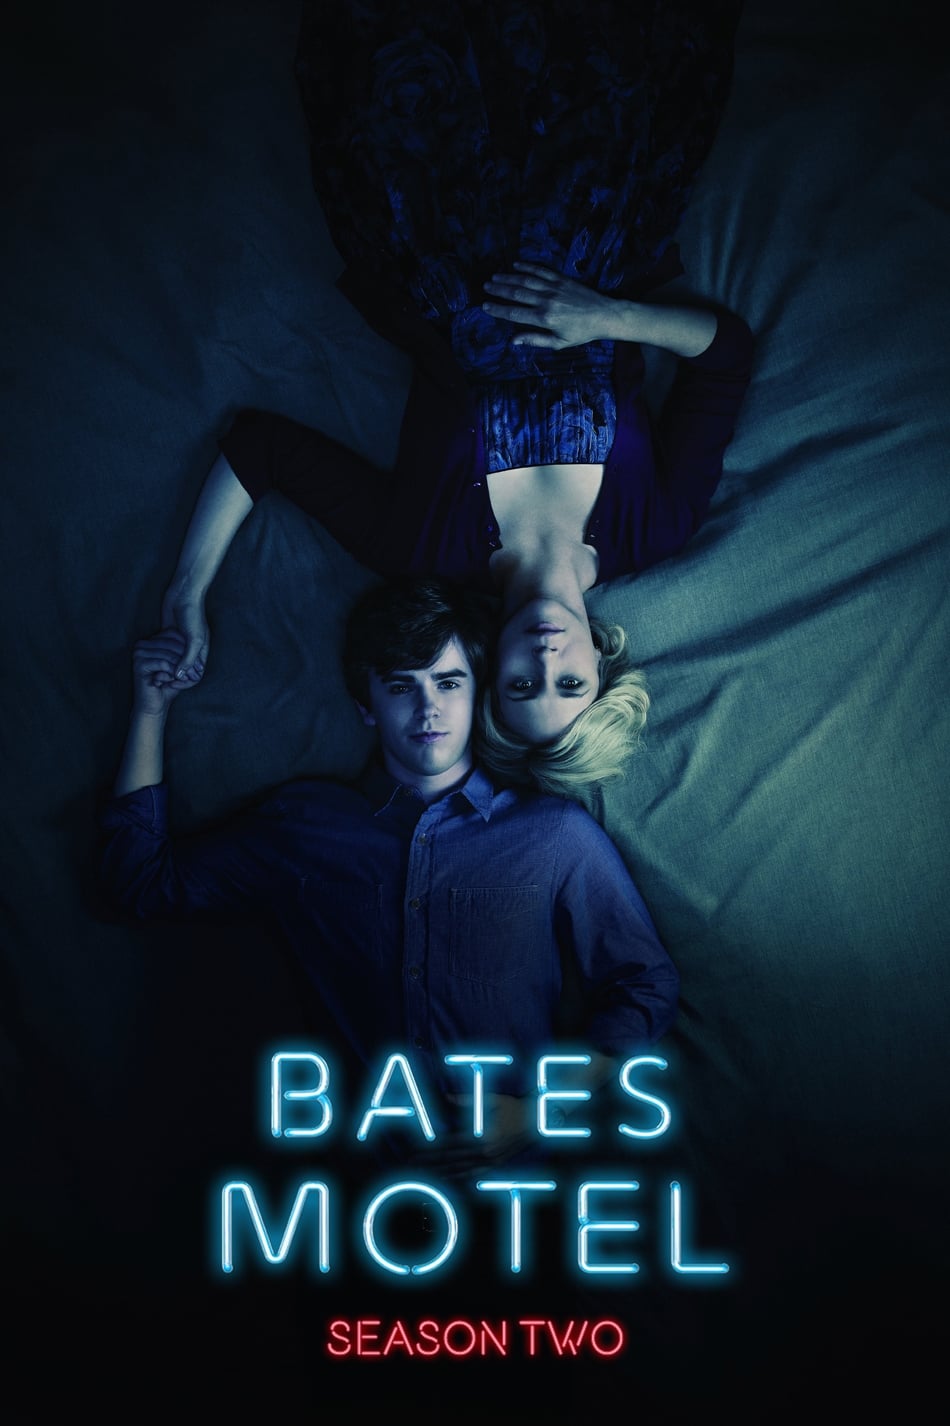 ดูหนังออนไลน์ฟรี Bates Motel (2014) Season 2 ซับไทย EP 3 เบส โมเทล ปี2 ตอนที่3 (ซับไทย)